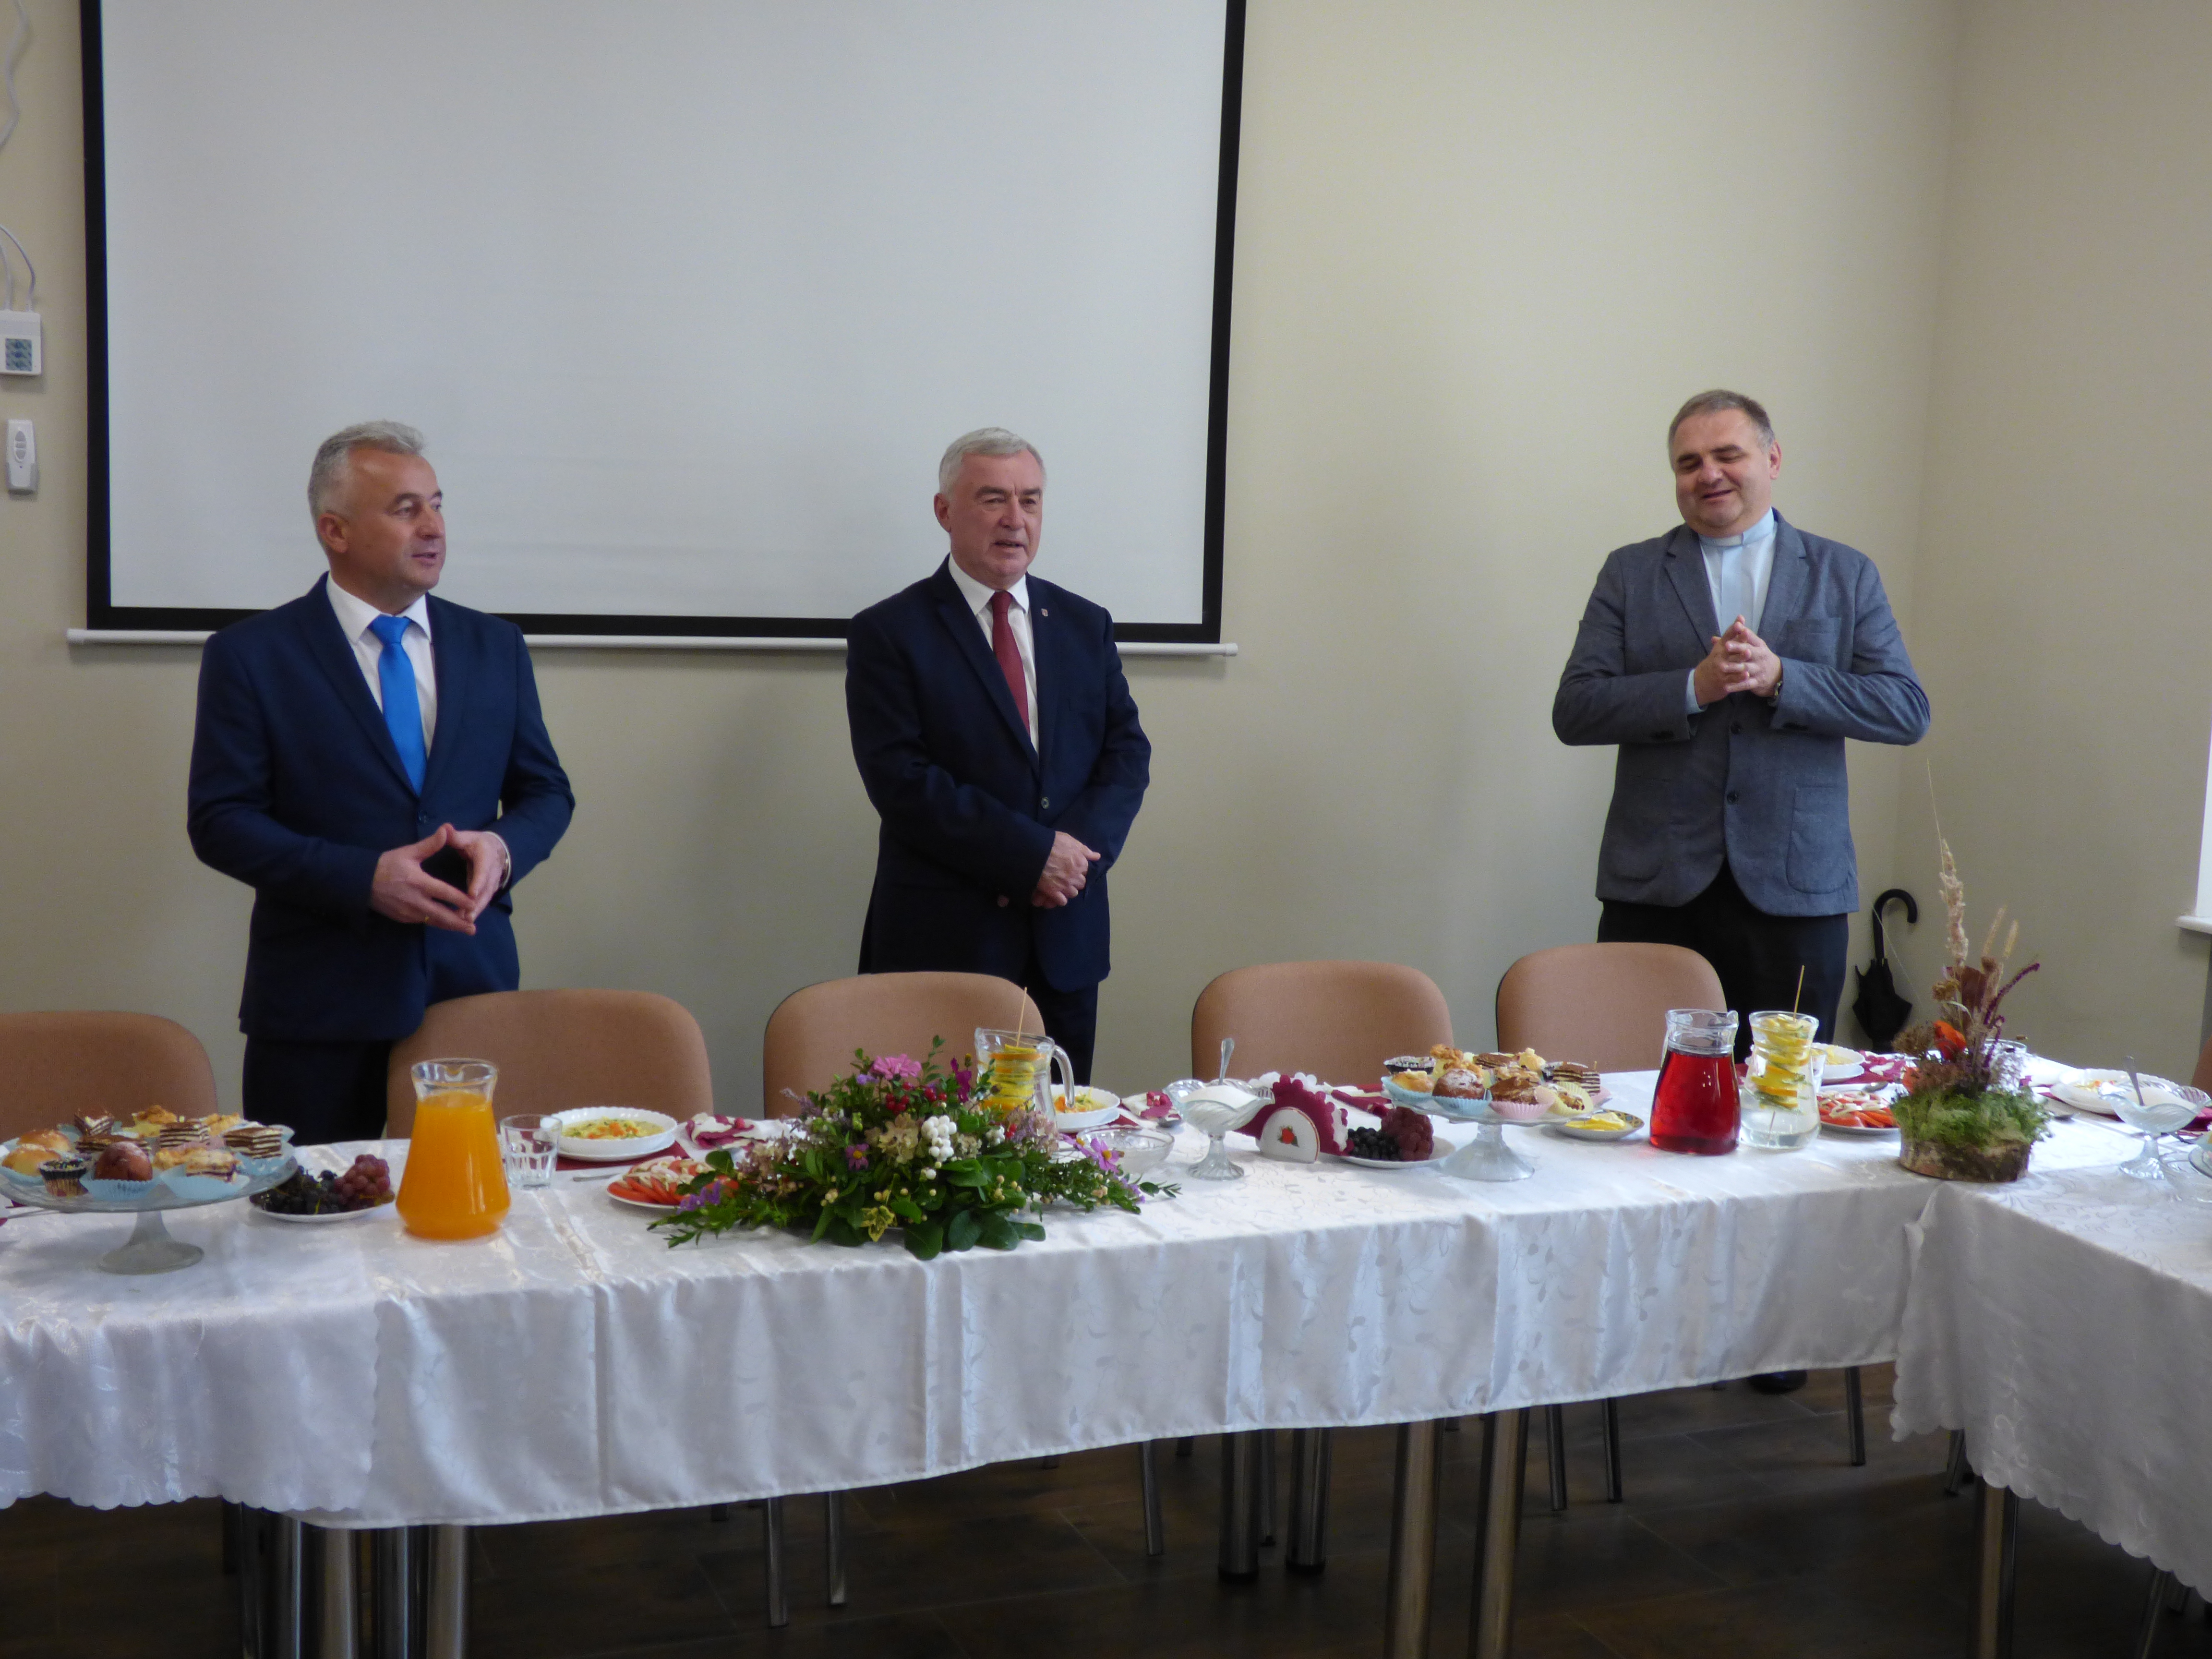 Zdjęcie z wizyty Marszałka Województwa Świętokrzyskiego w Gminie Ruda Maleniecka